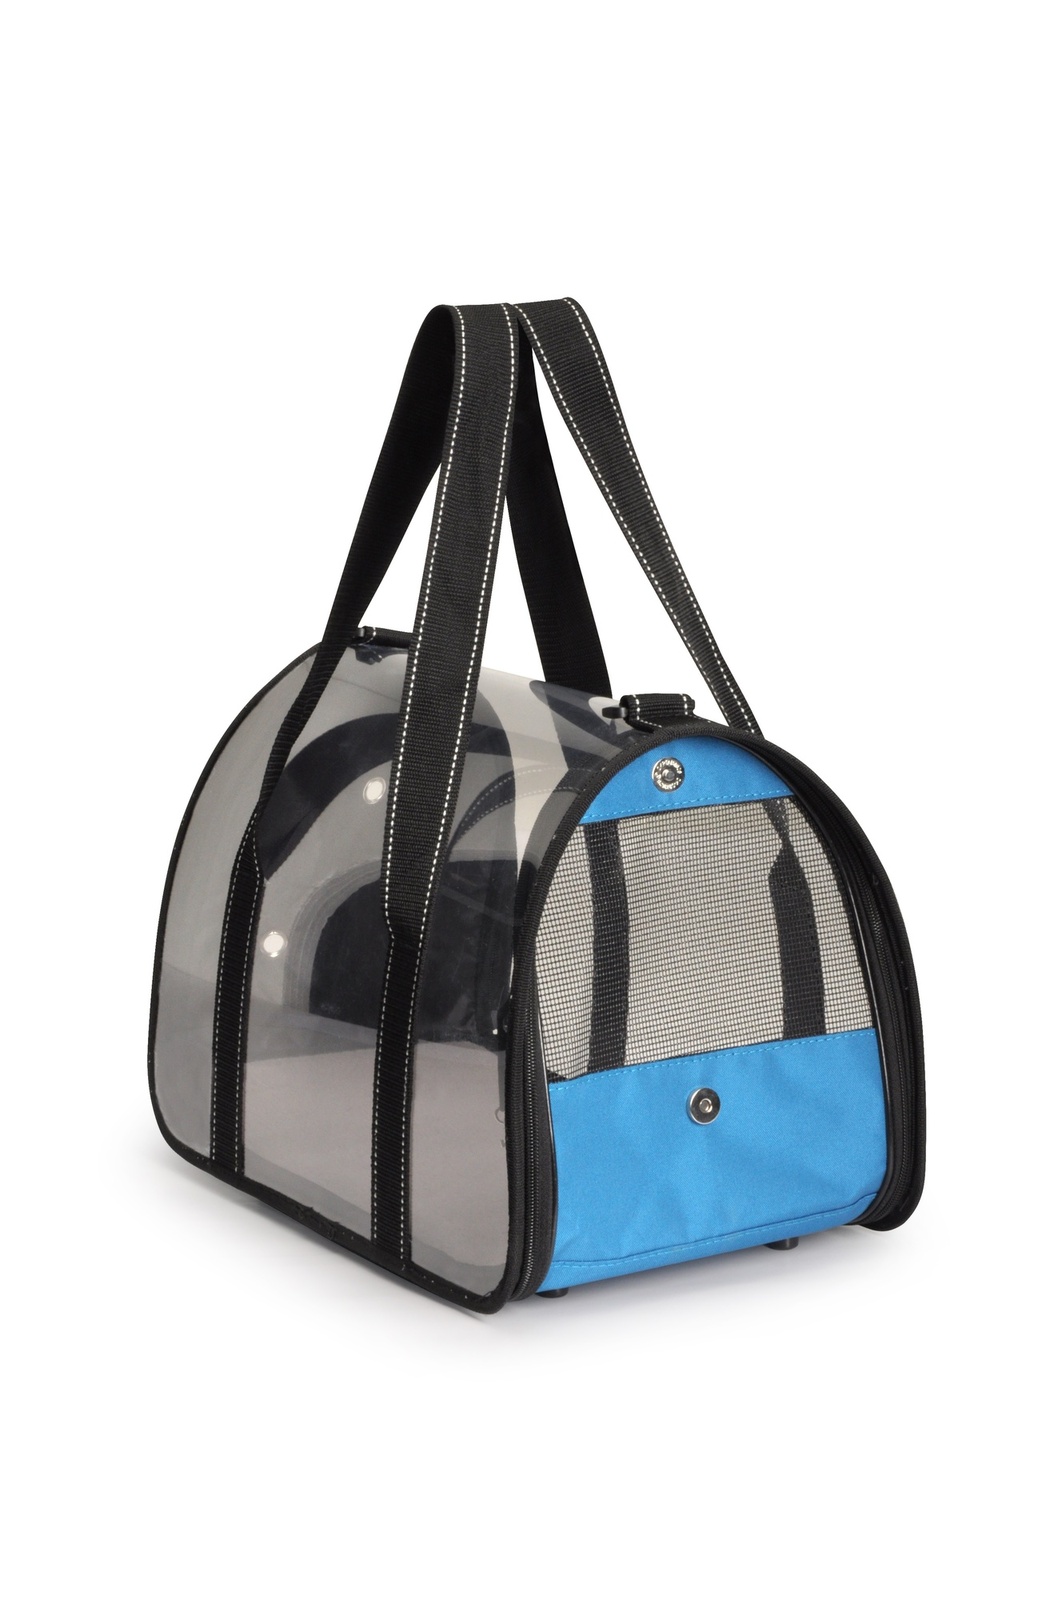 Camon Camon сумка-переноска прозрачная, 42x25x25 см, голубая (670 г) camon camon сумка переноска для животных стеганая синяя 42x25x25 см 1